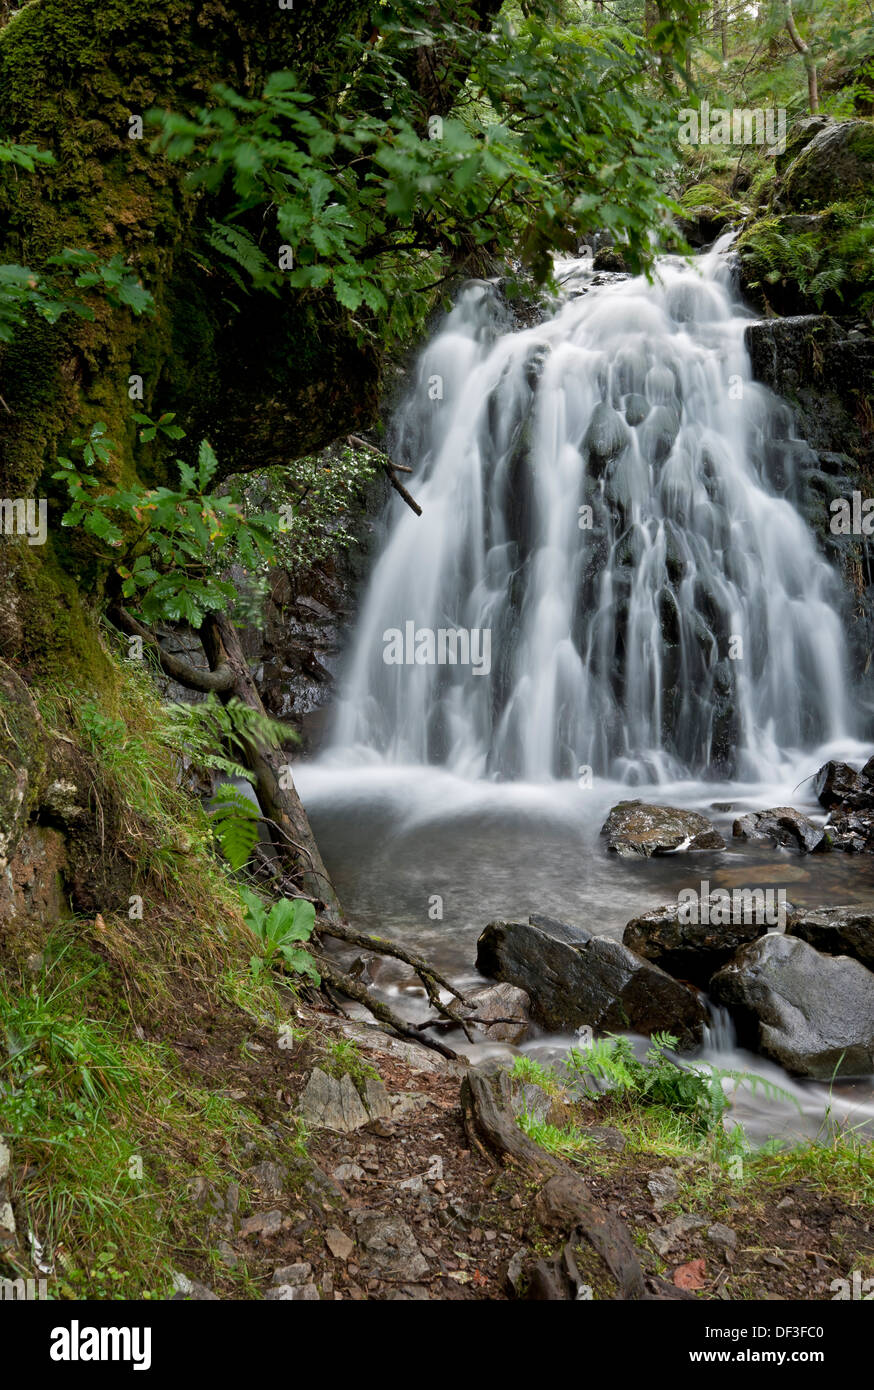 Wasserfall Wasserfälle Tom Gill Beck bei Tarn Hows im Sommer Lake District National Park Cumbria England Vereinigtes Königreich Großbritannien und Nordirland GB Großbritannien Stockfoto